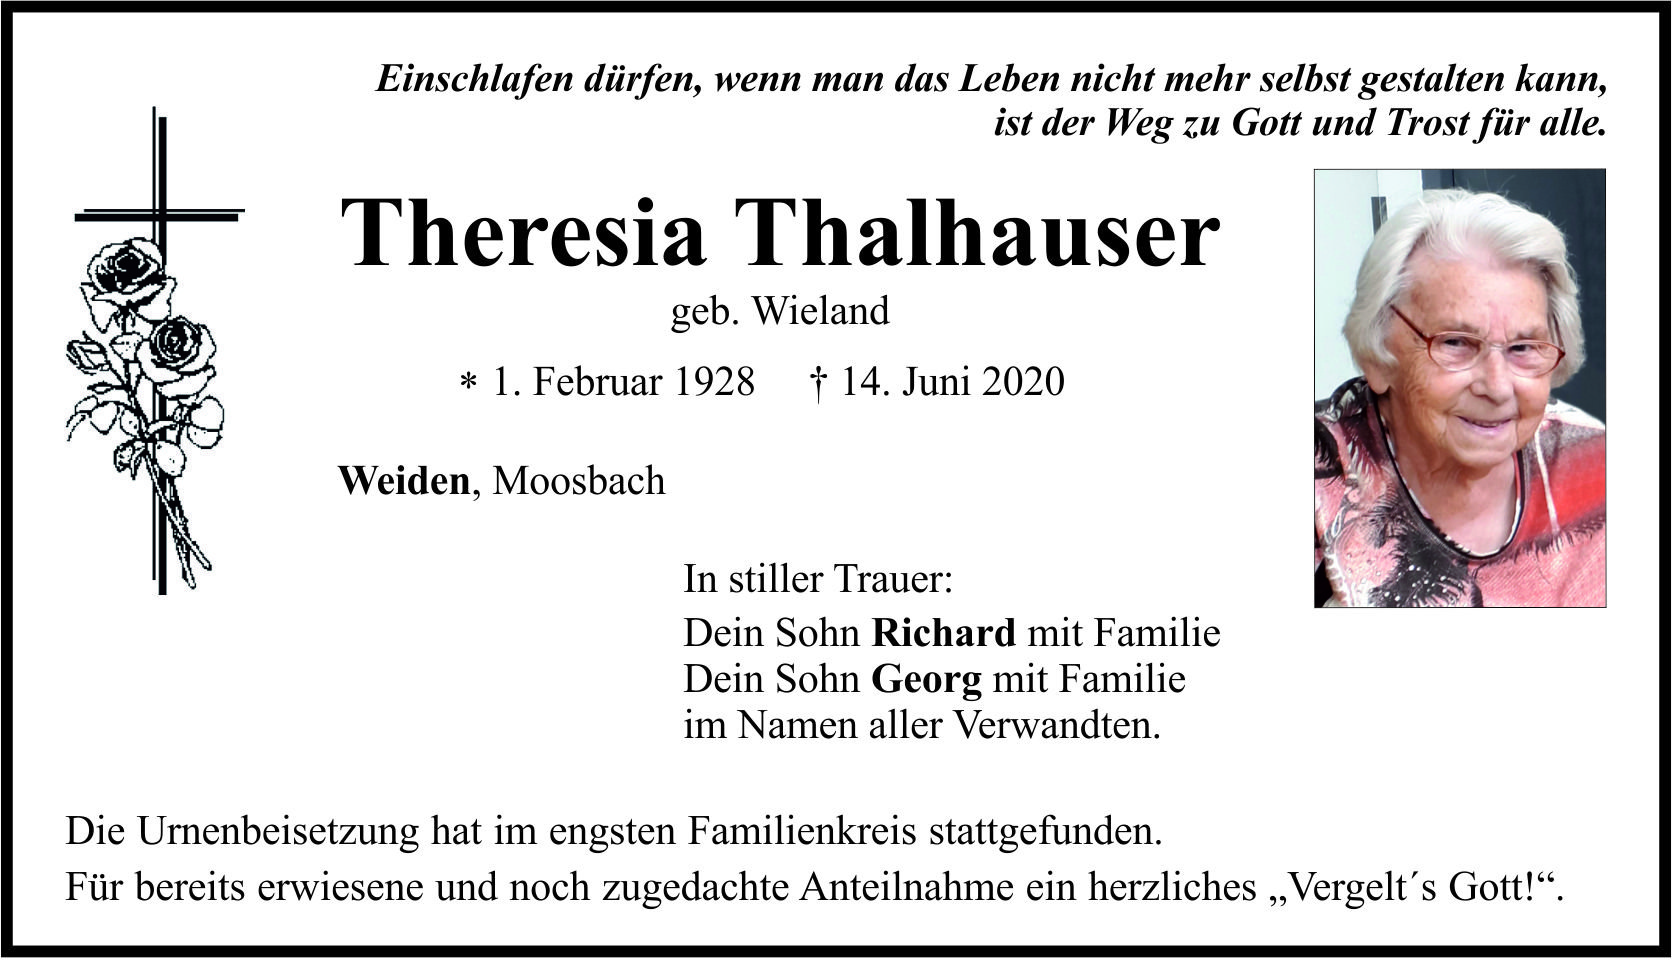 Traueranzeige Theresia Thalhauser, Weiden Moosbach